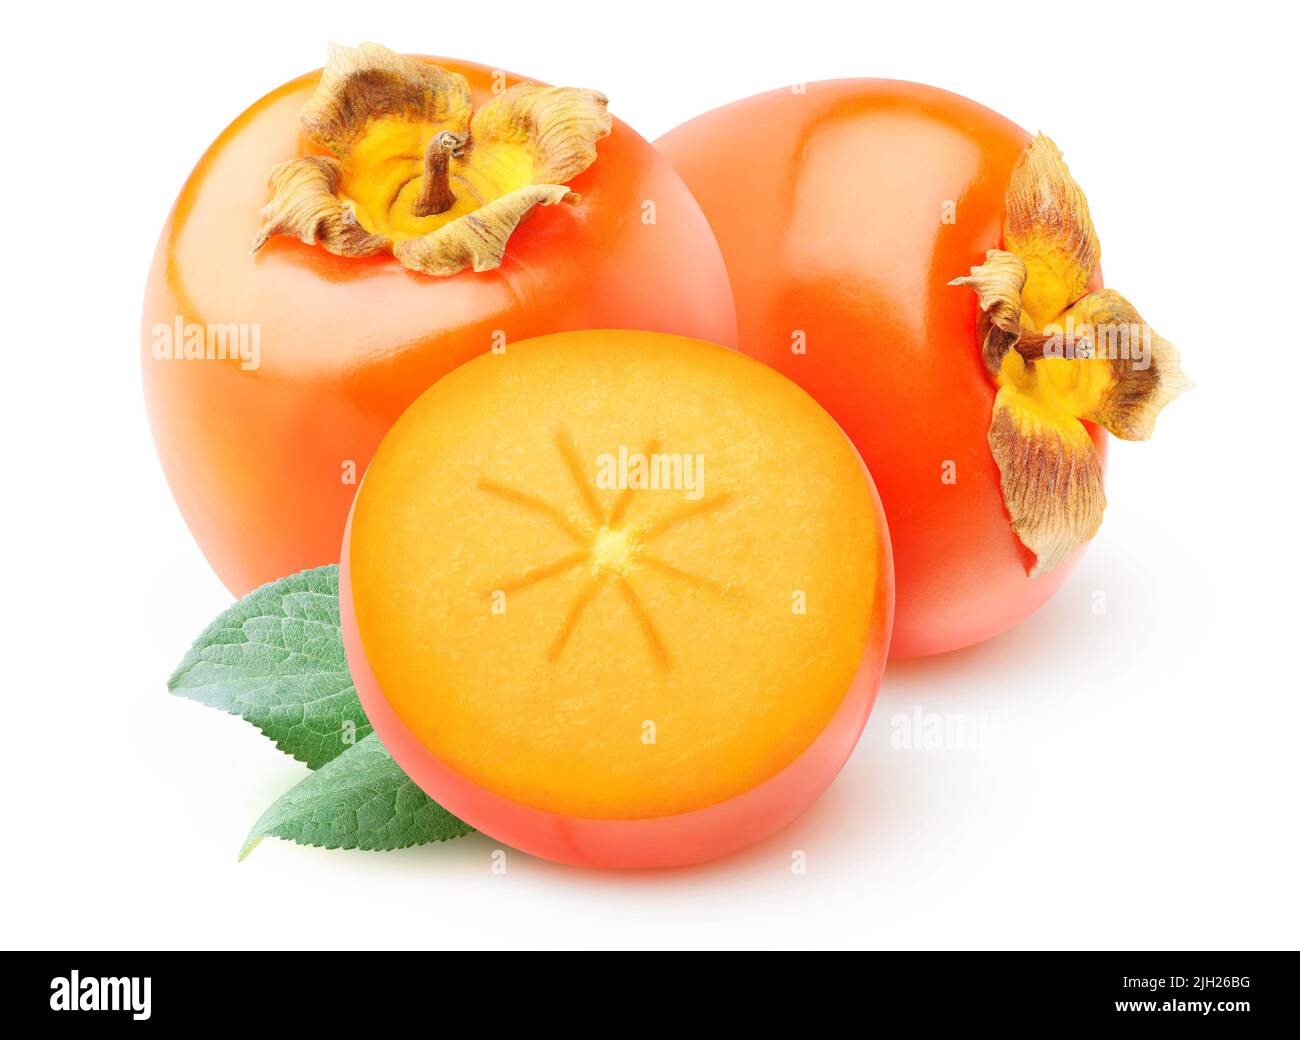 Fruits persimmon coupés en deux isolés sur fond blanc Banque D'Images